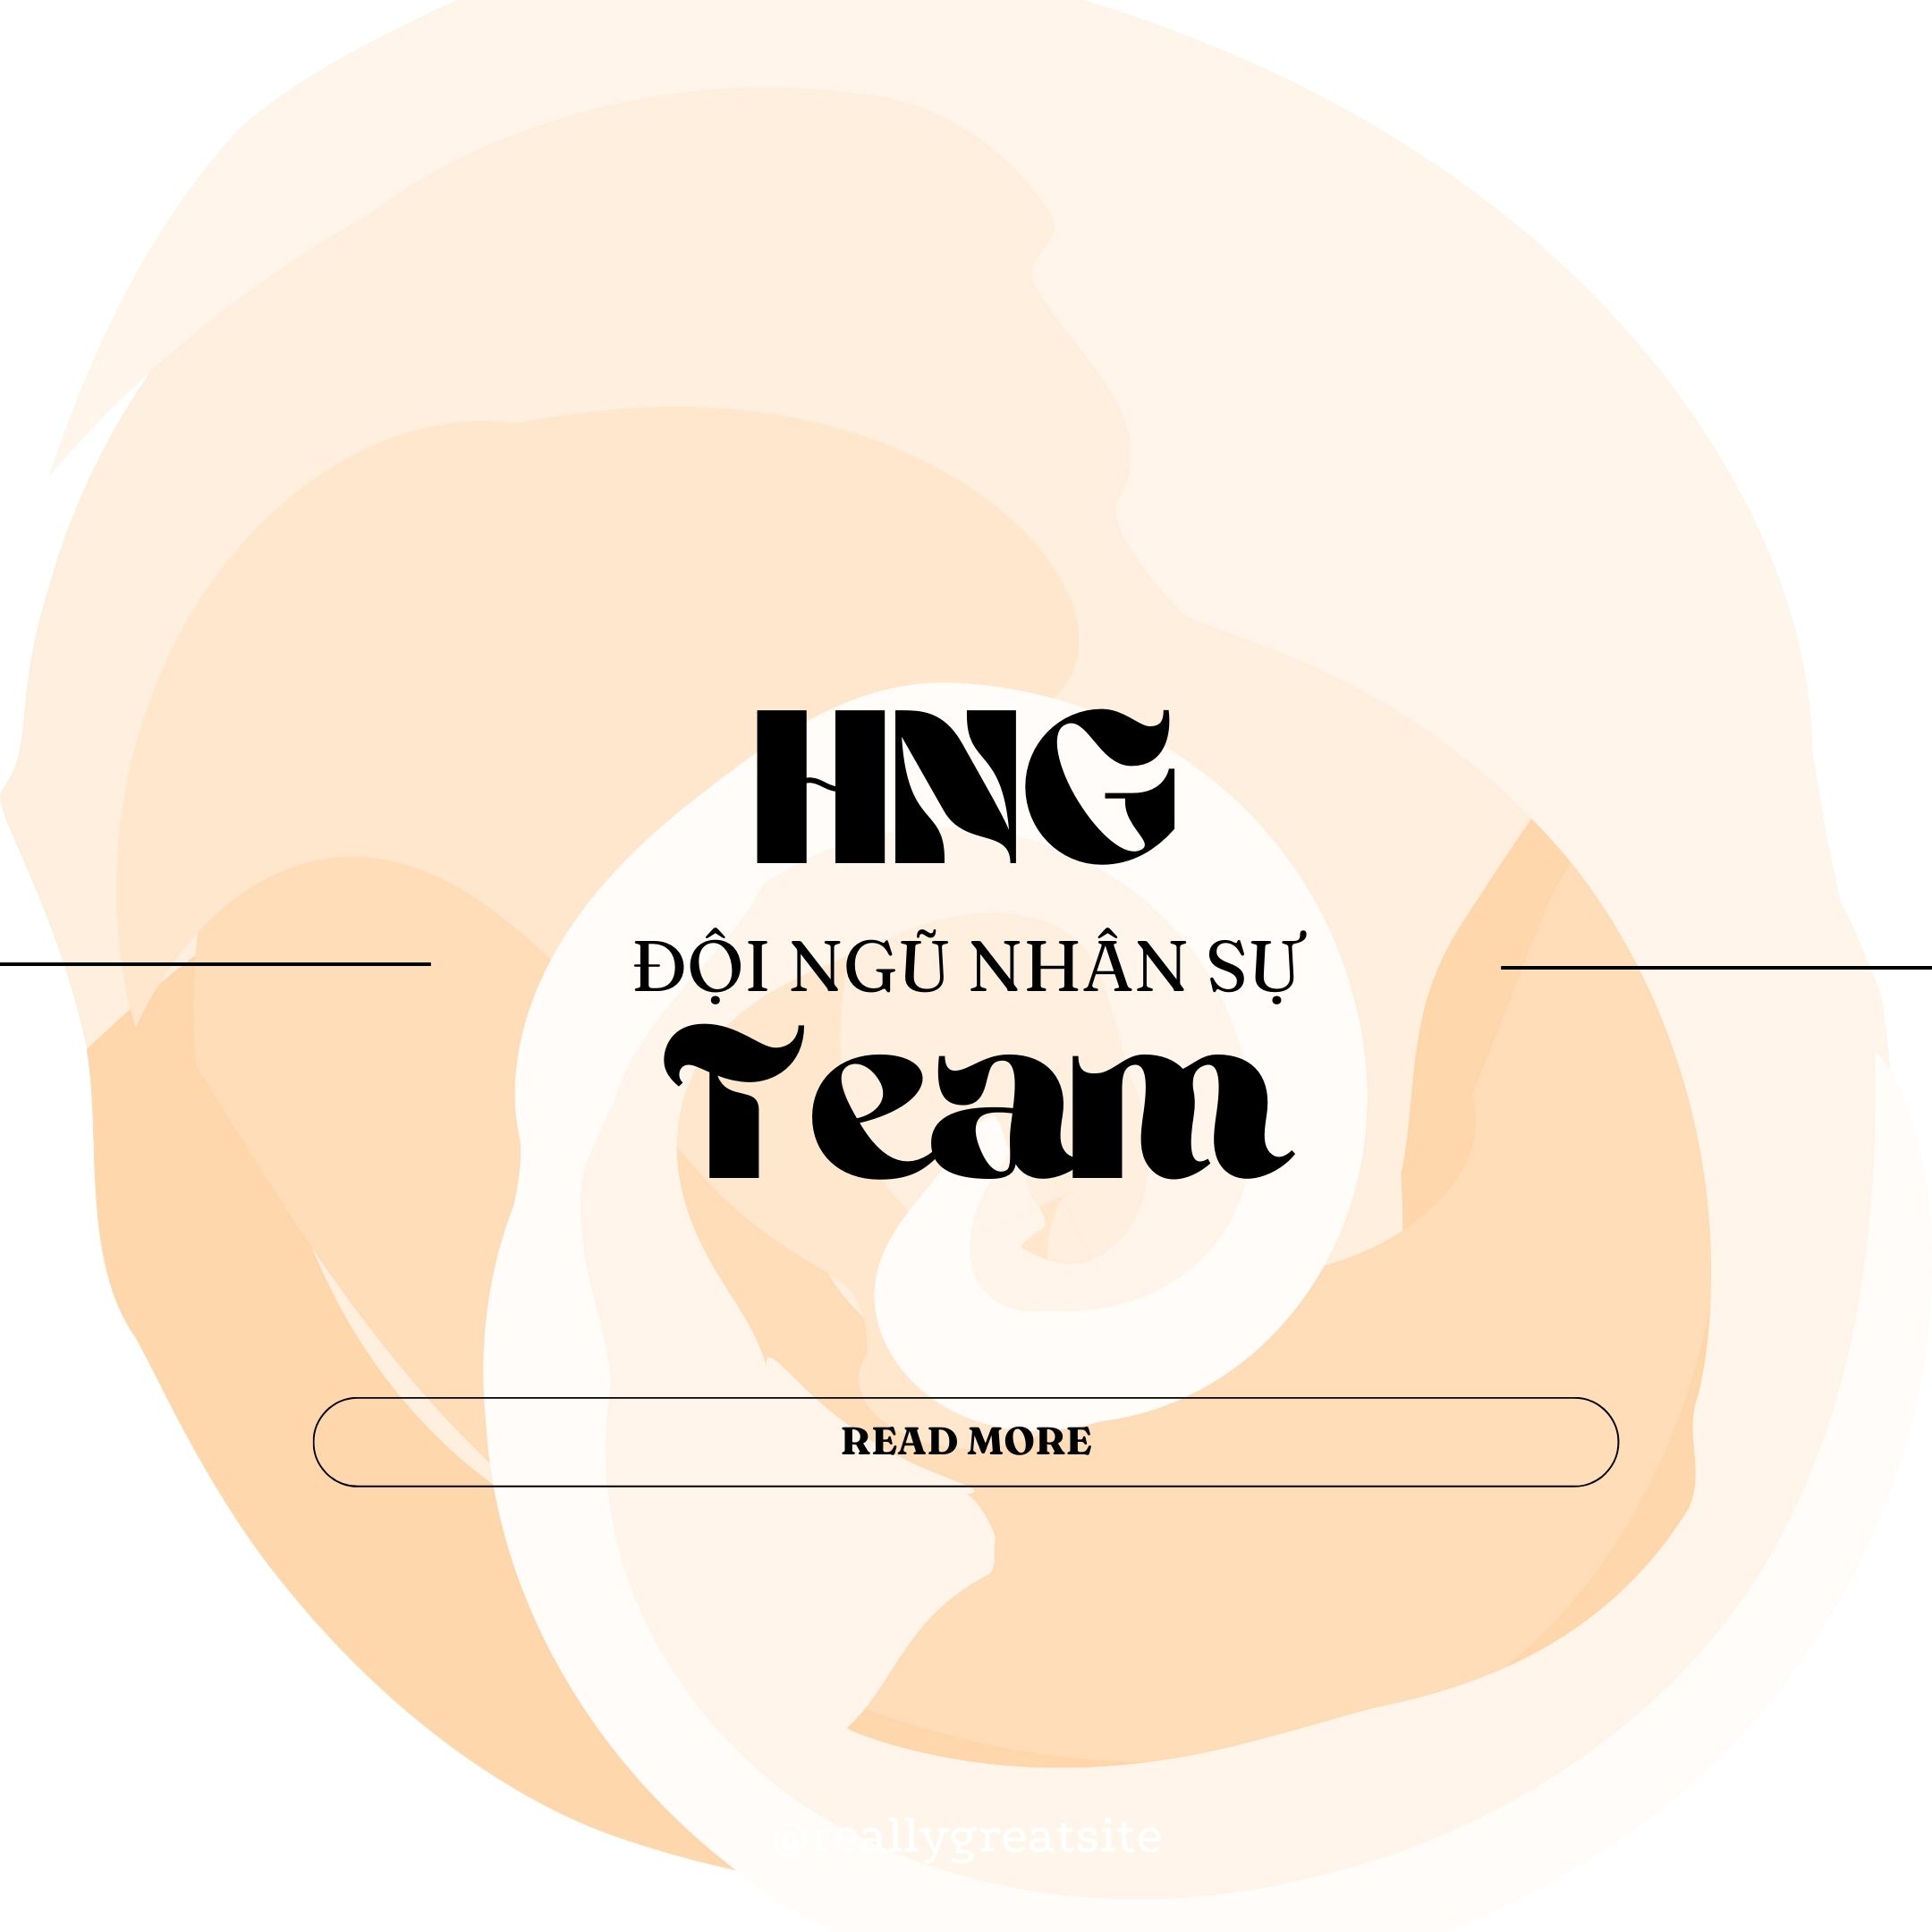 HNG Team